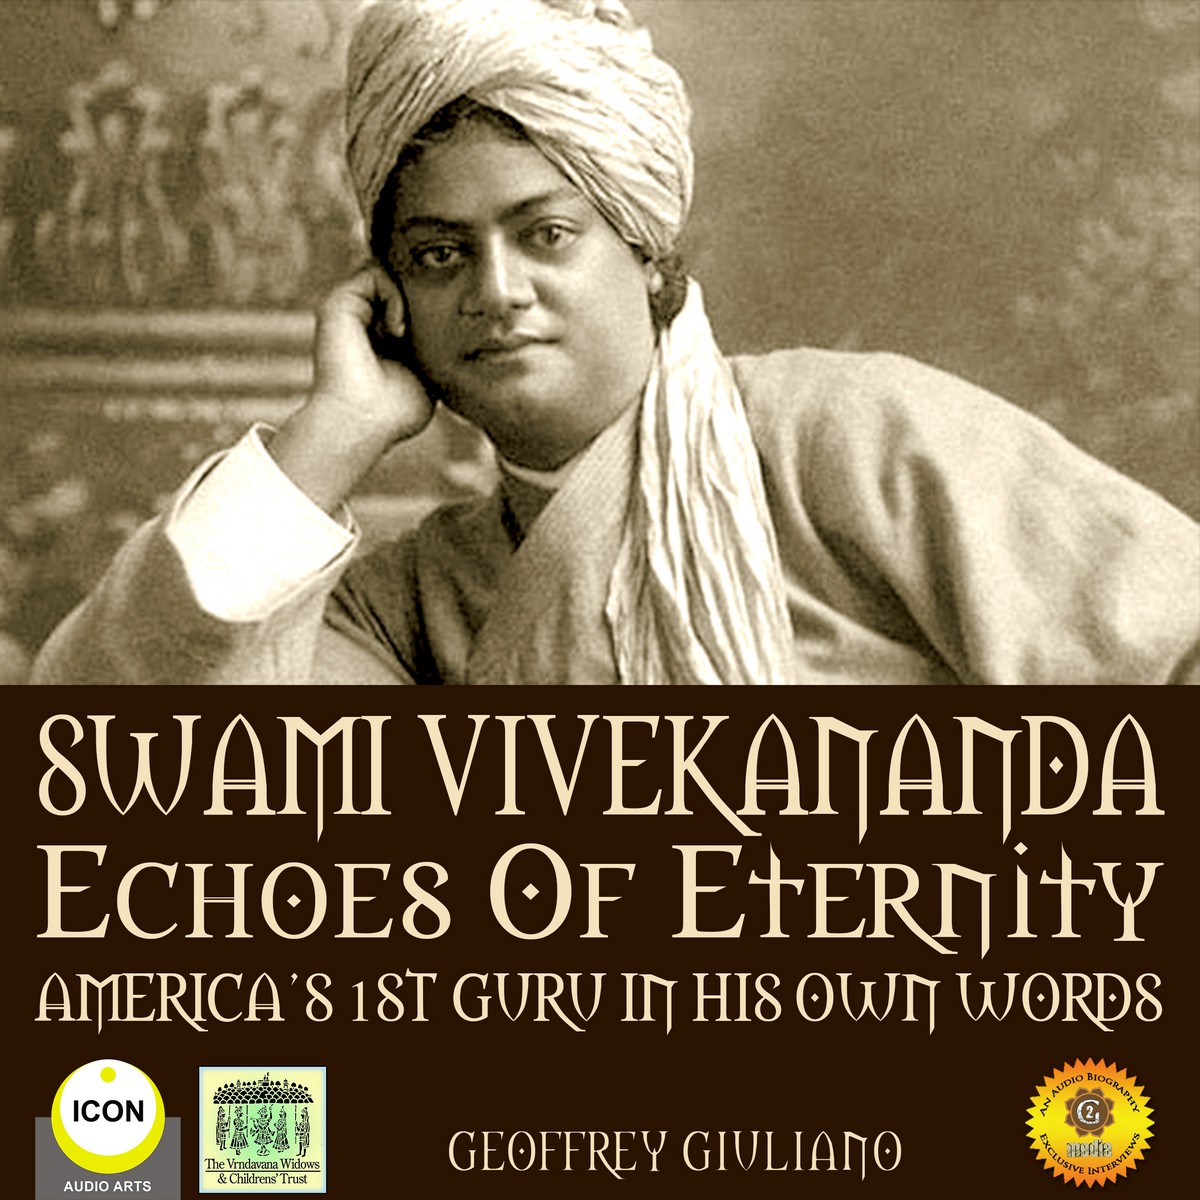 Swami Vivekananda Echoes of Eternity – America’s 1st Guru in His Own Words